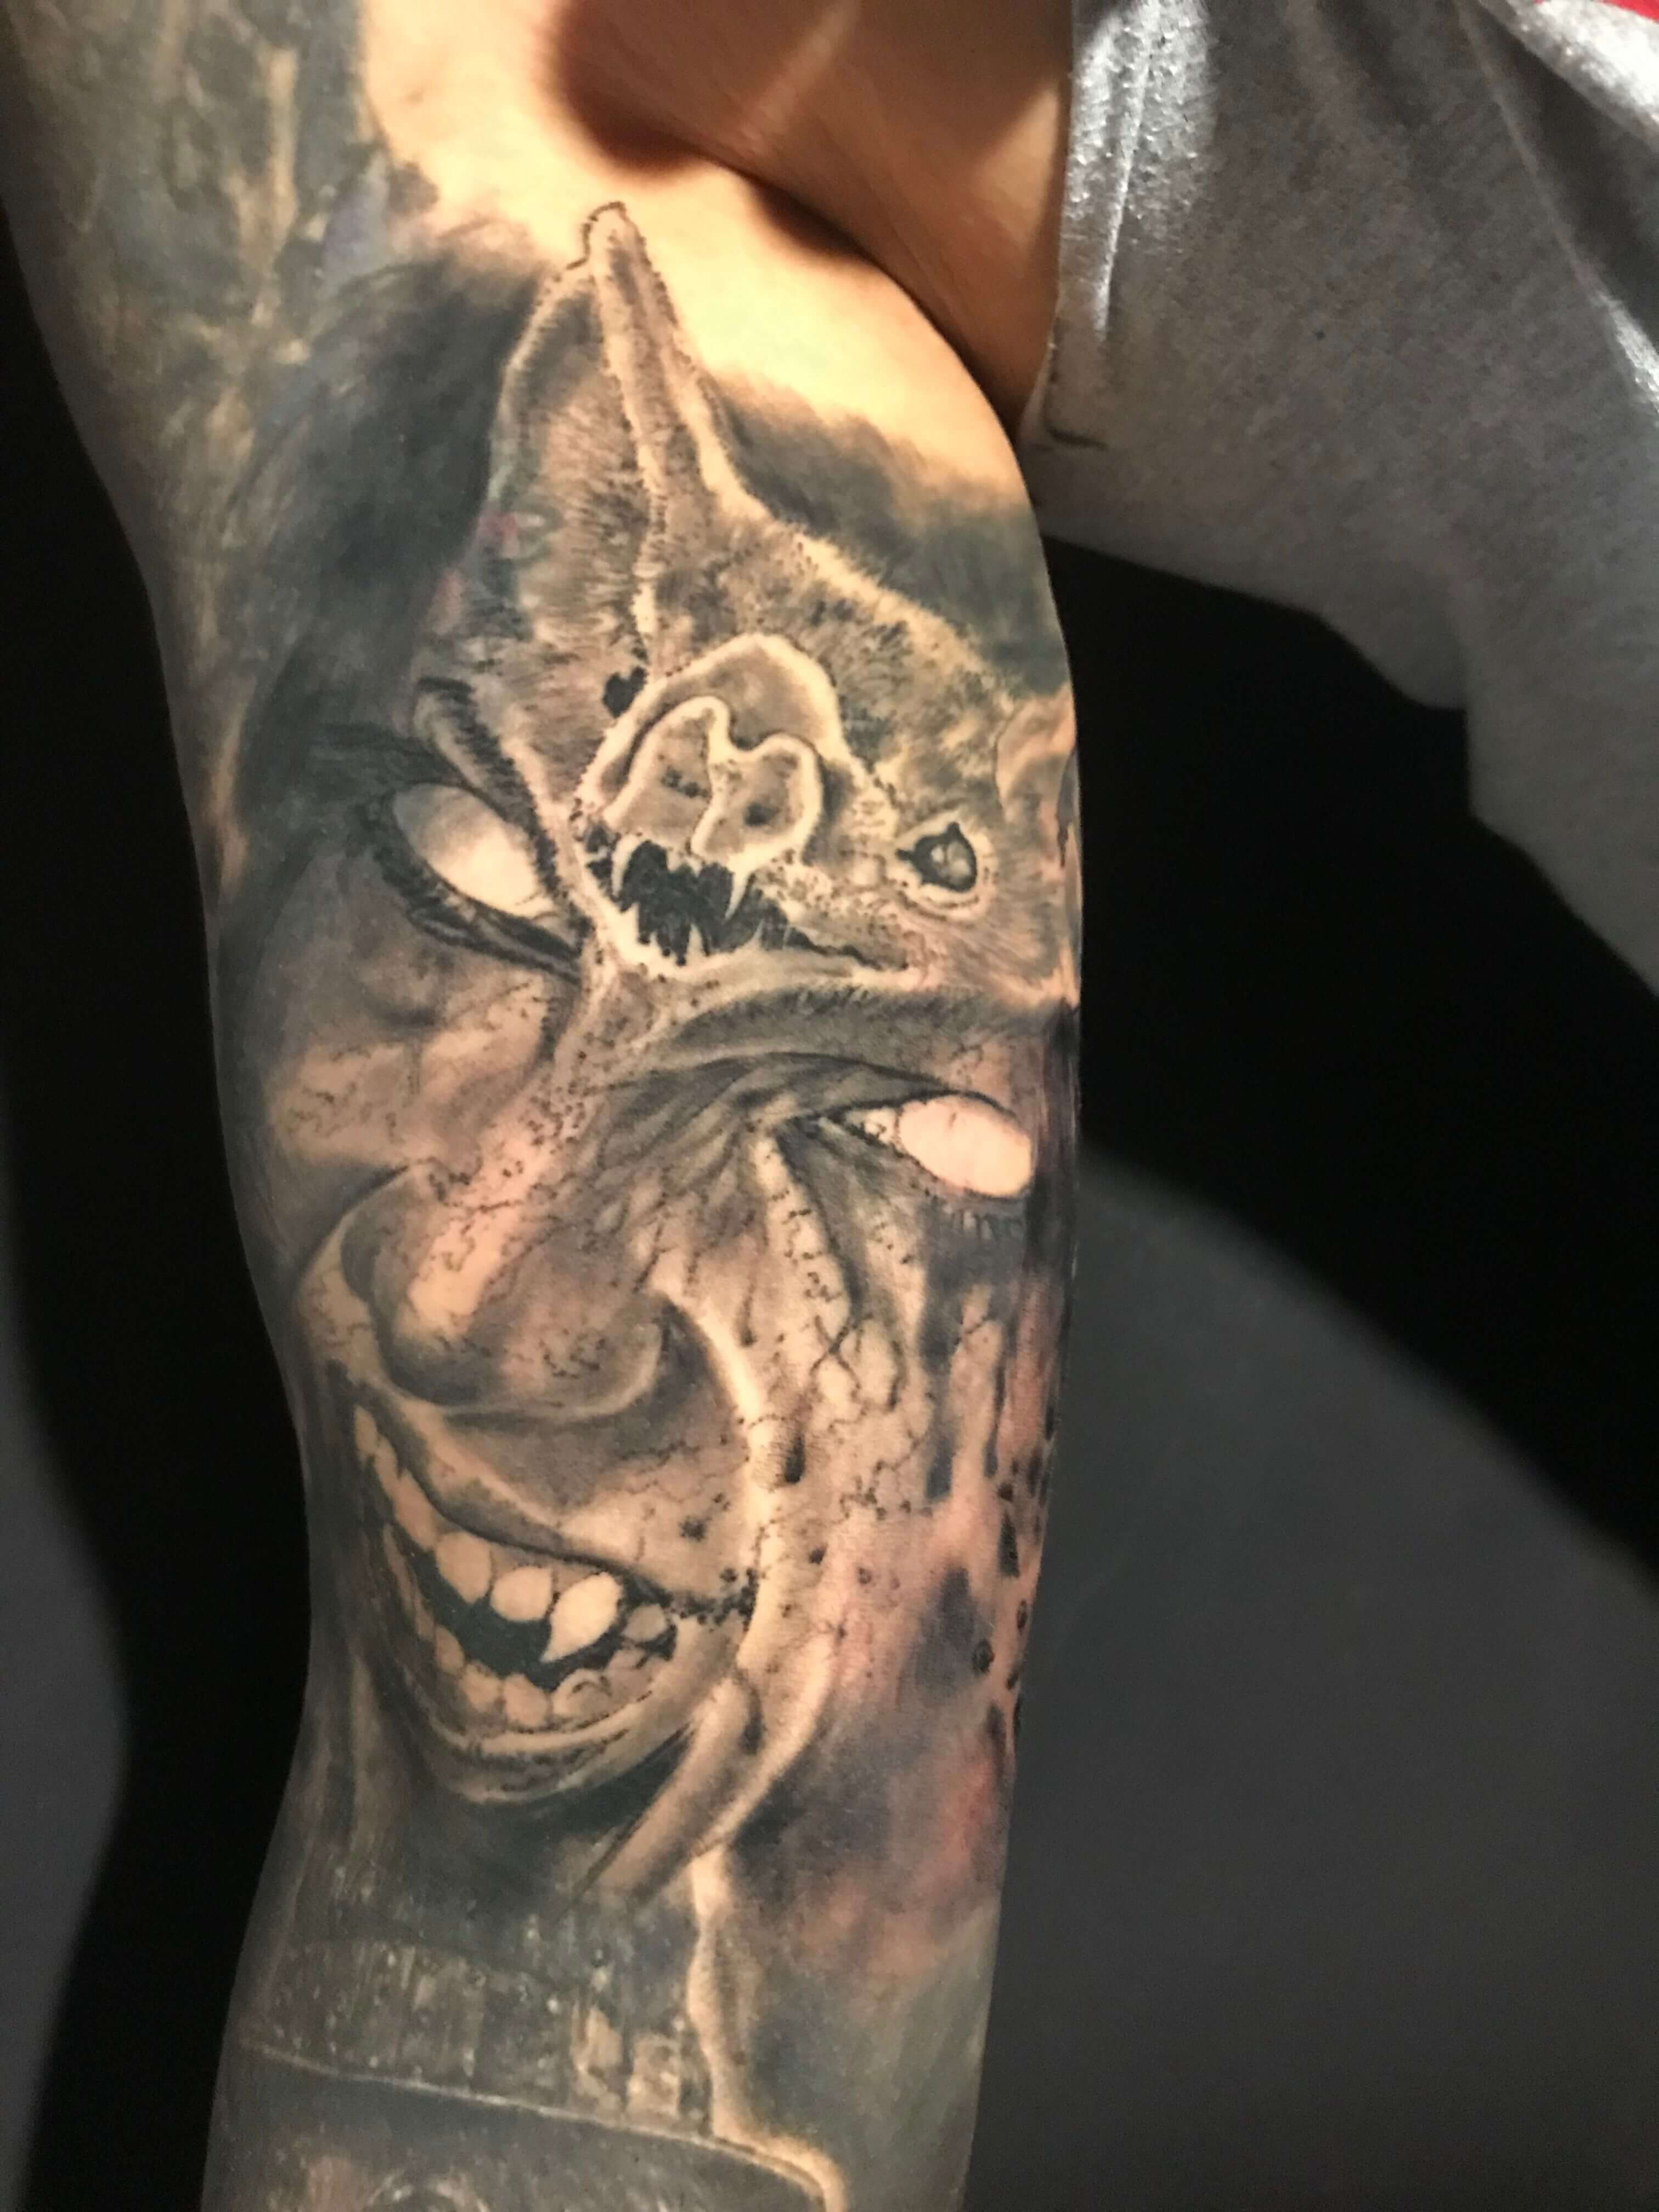 Tatuaje de un vampiro en el antebrazo